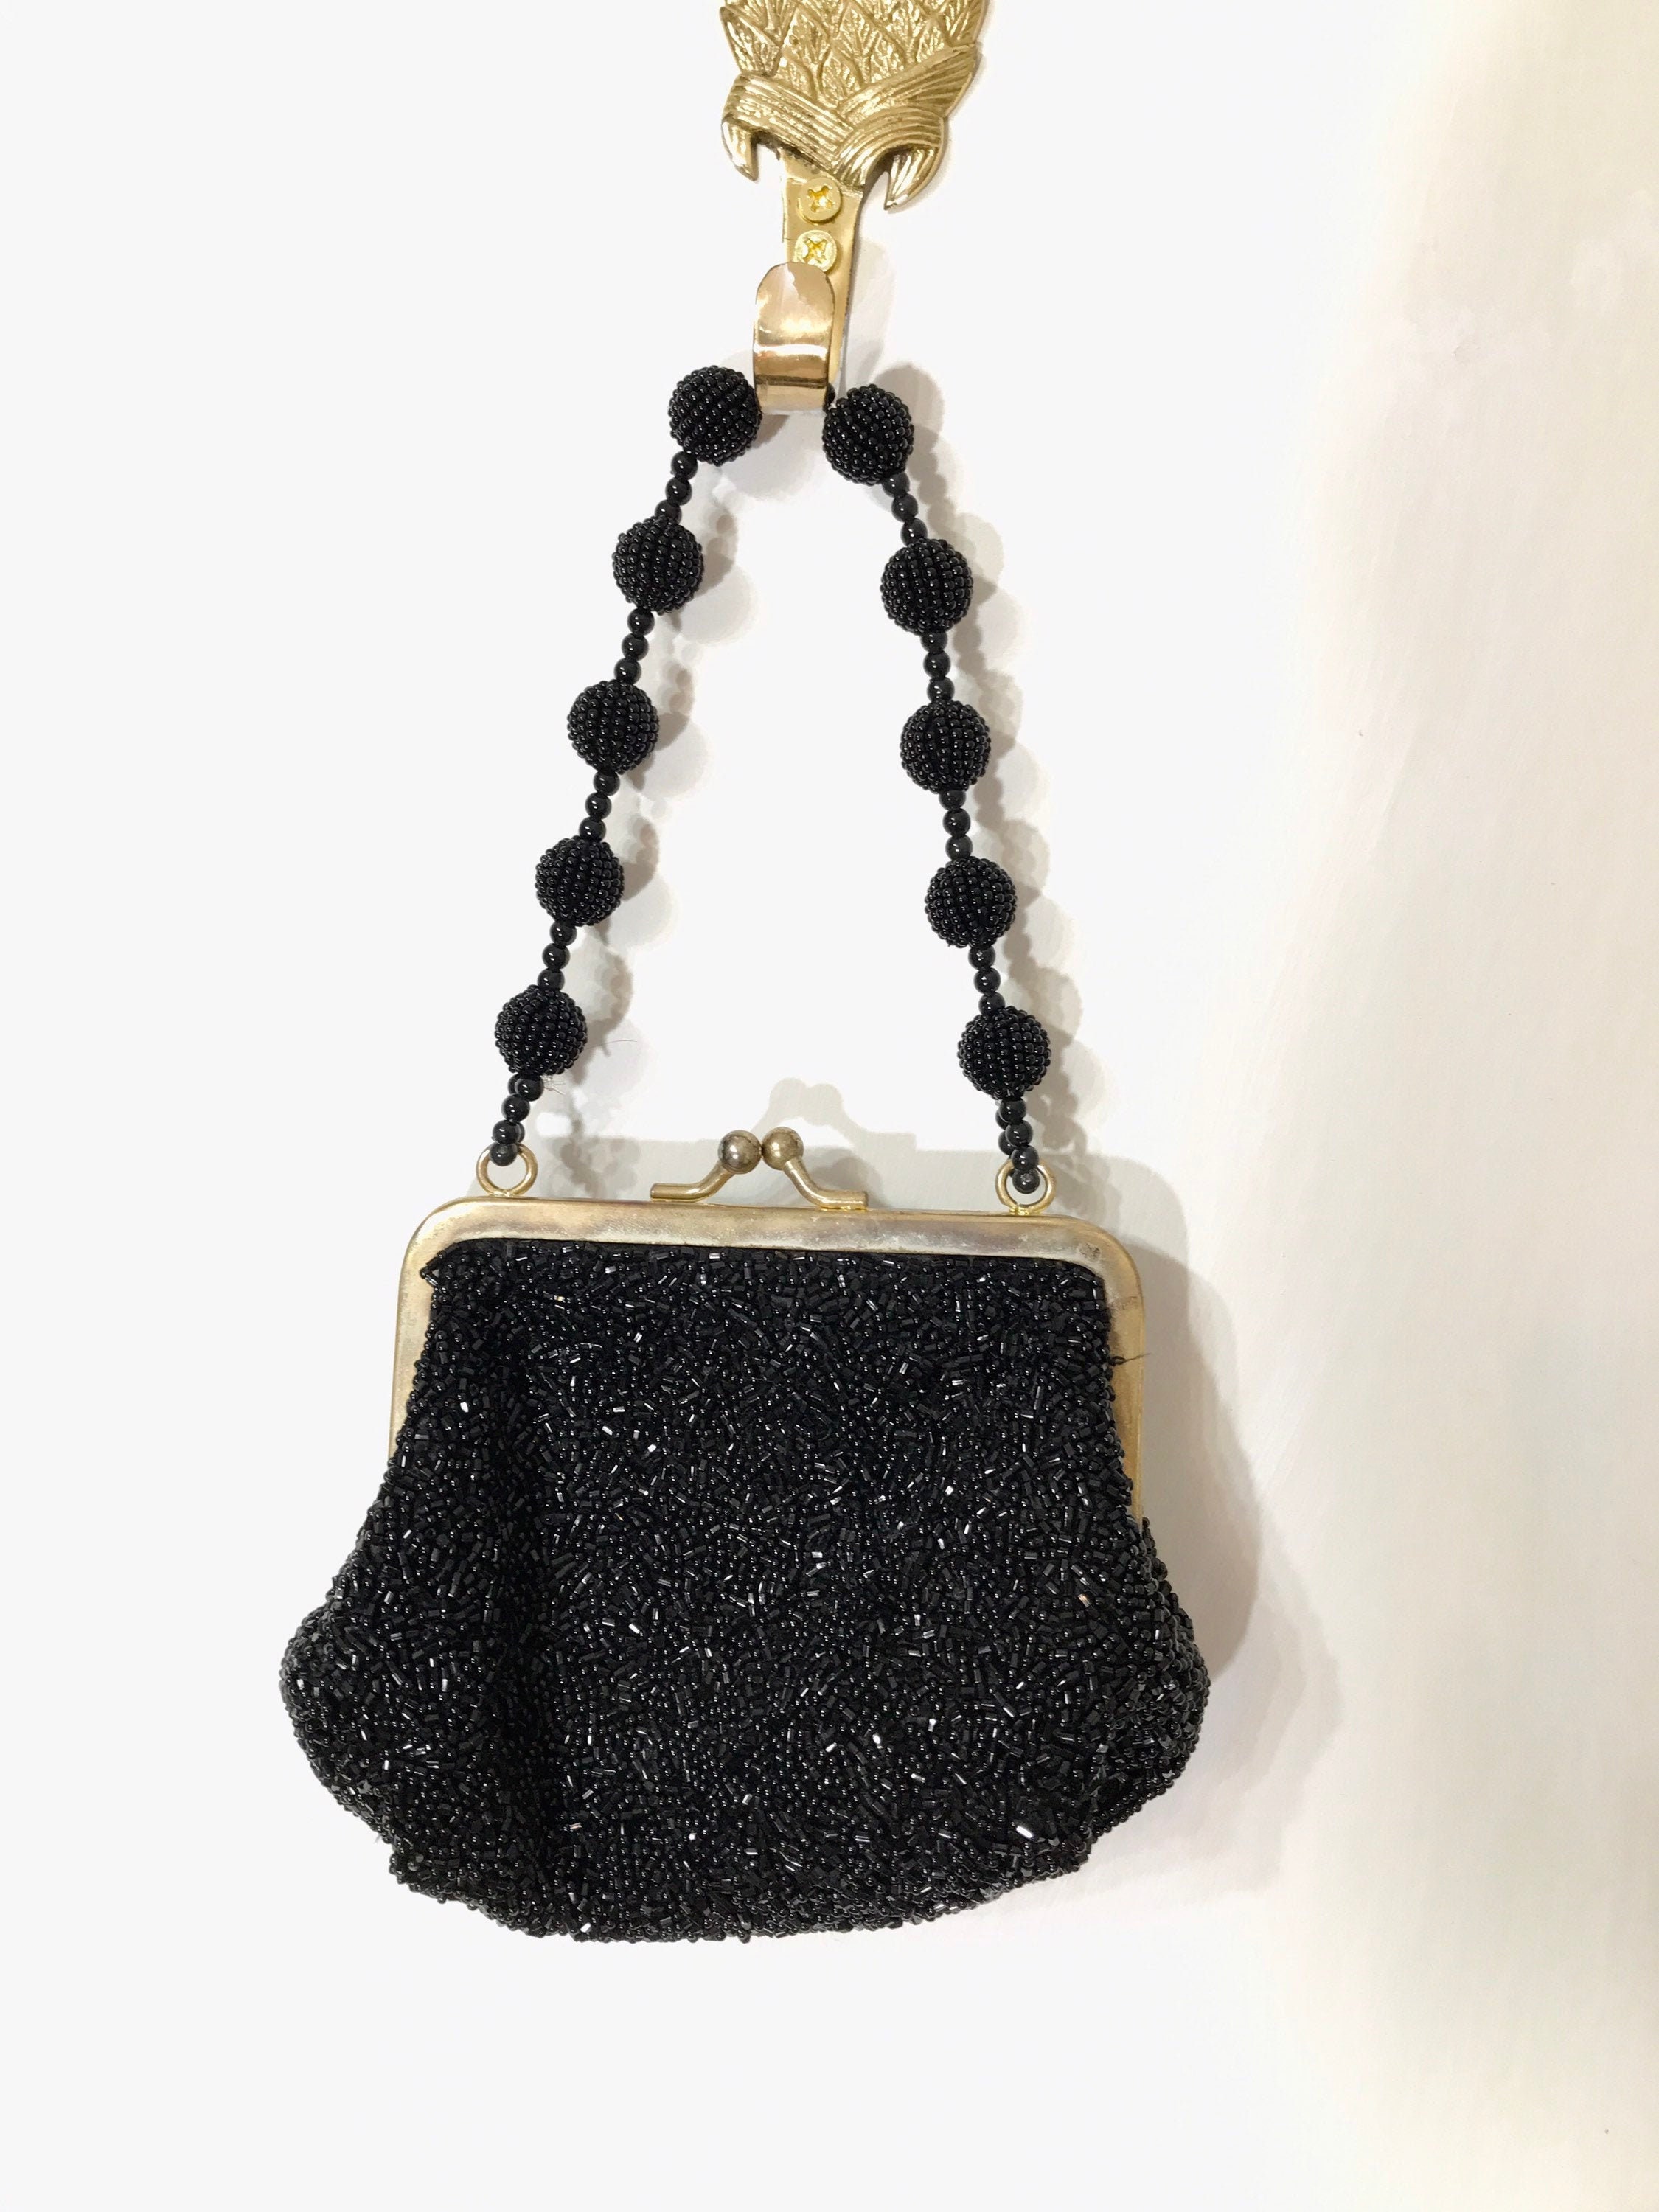 La Regale Evening Bag Purse Hang Bag Womens Black Gold 9" x 6"